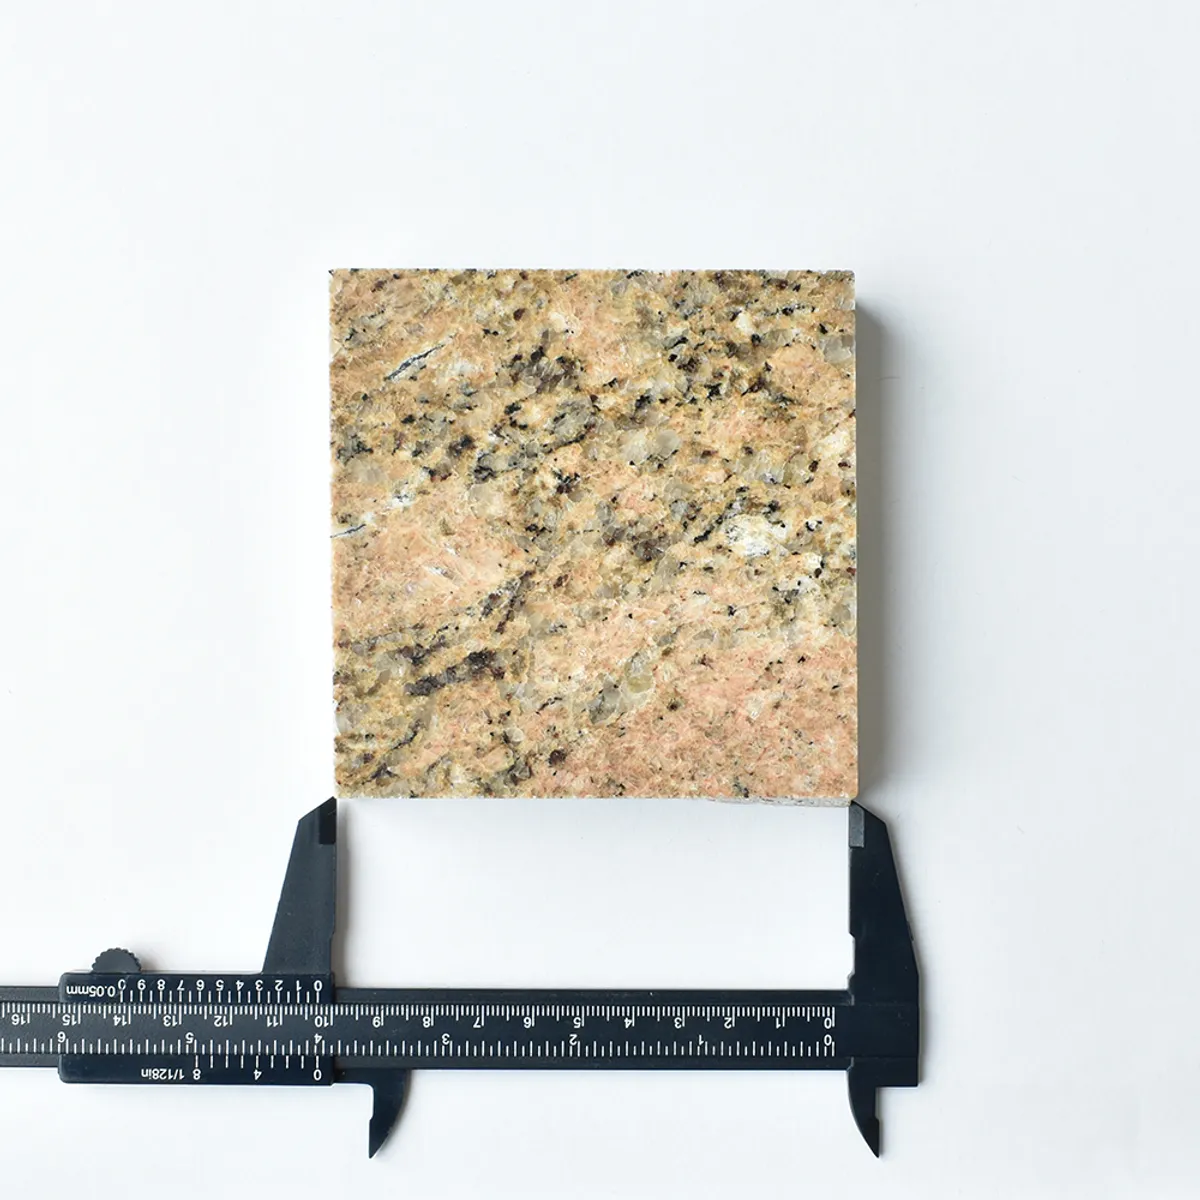 Sample 10Cm Granite Giallo Venezia Inside Out Contracts